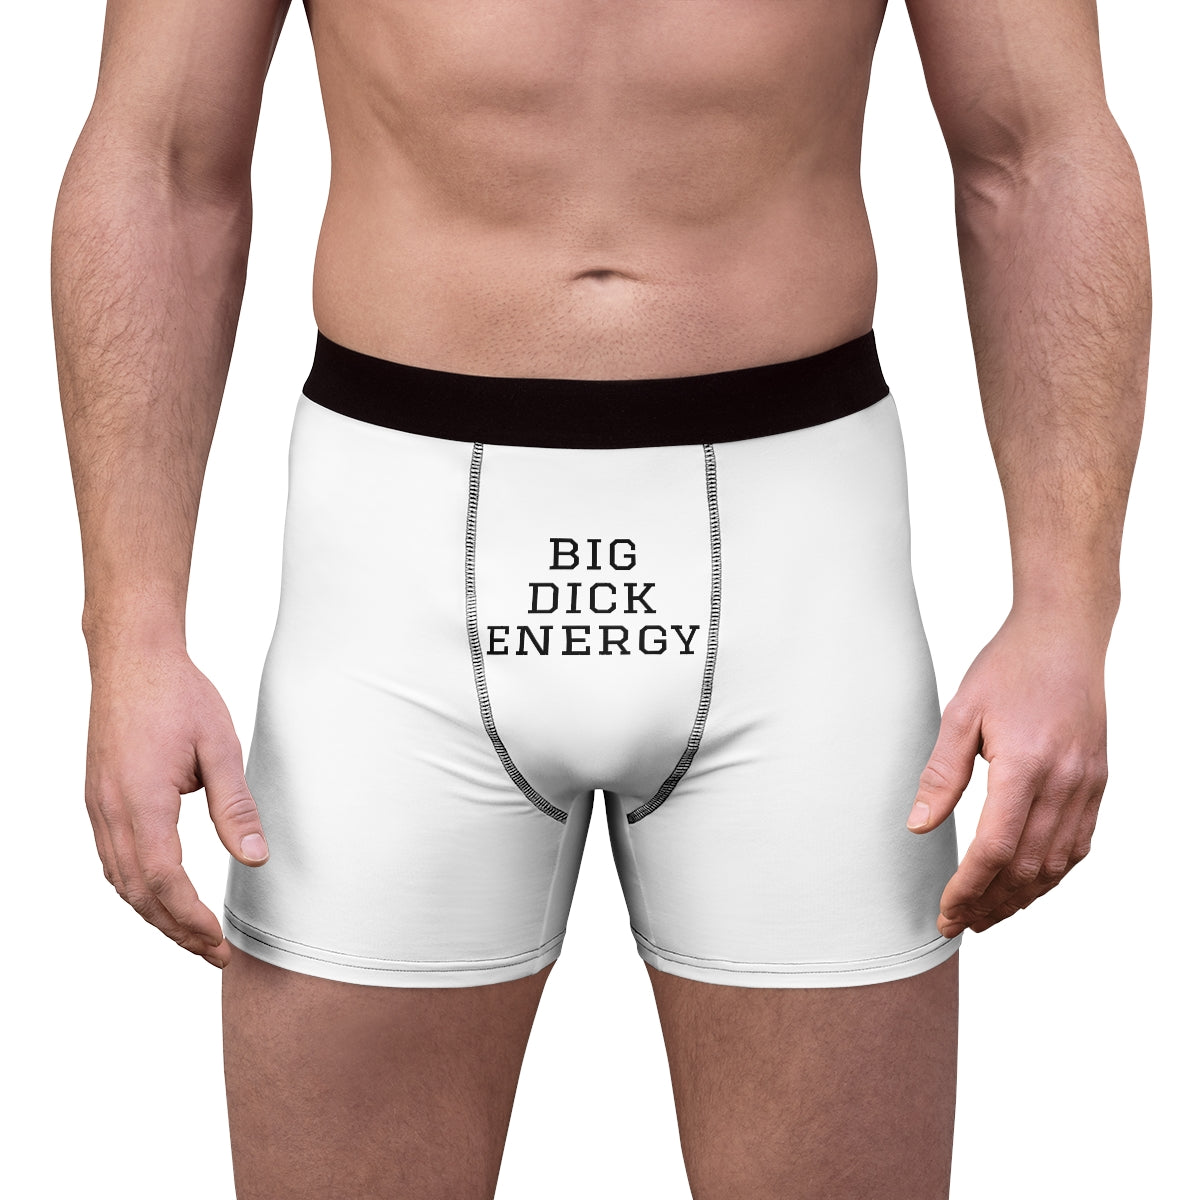 Best of Huge dick in underwear